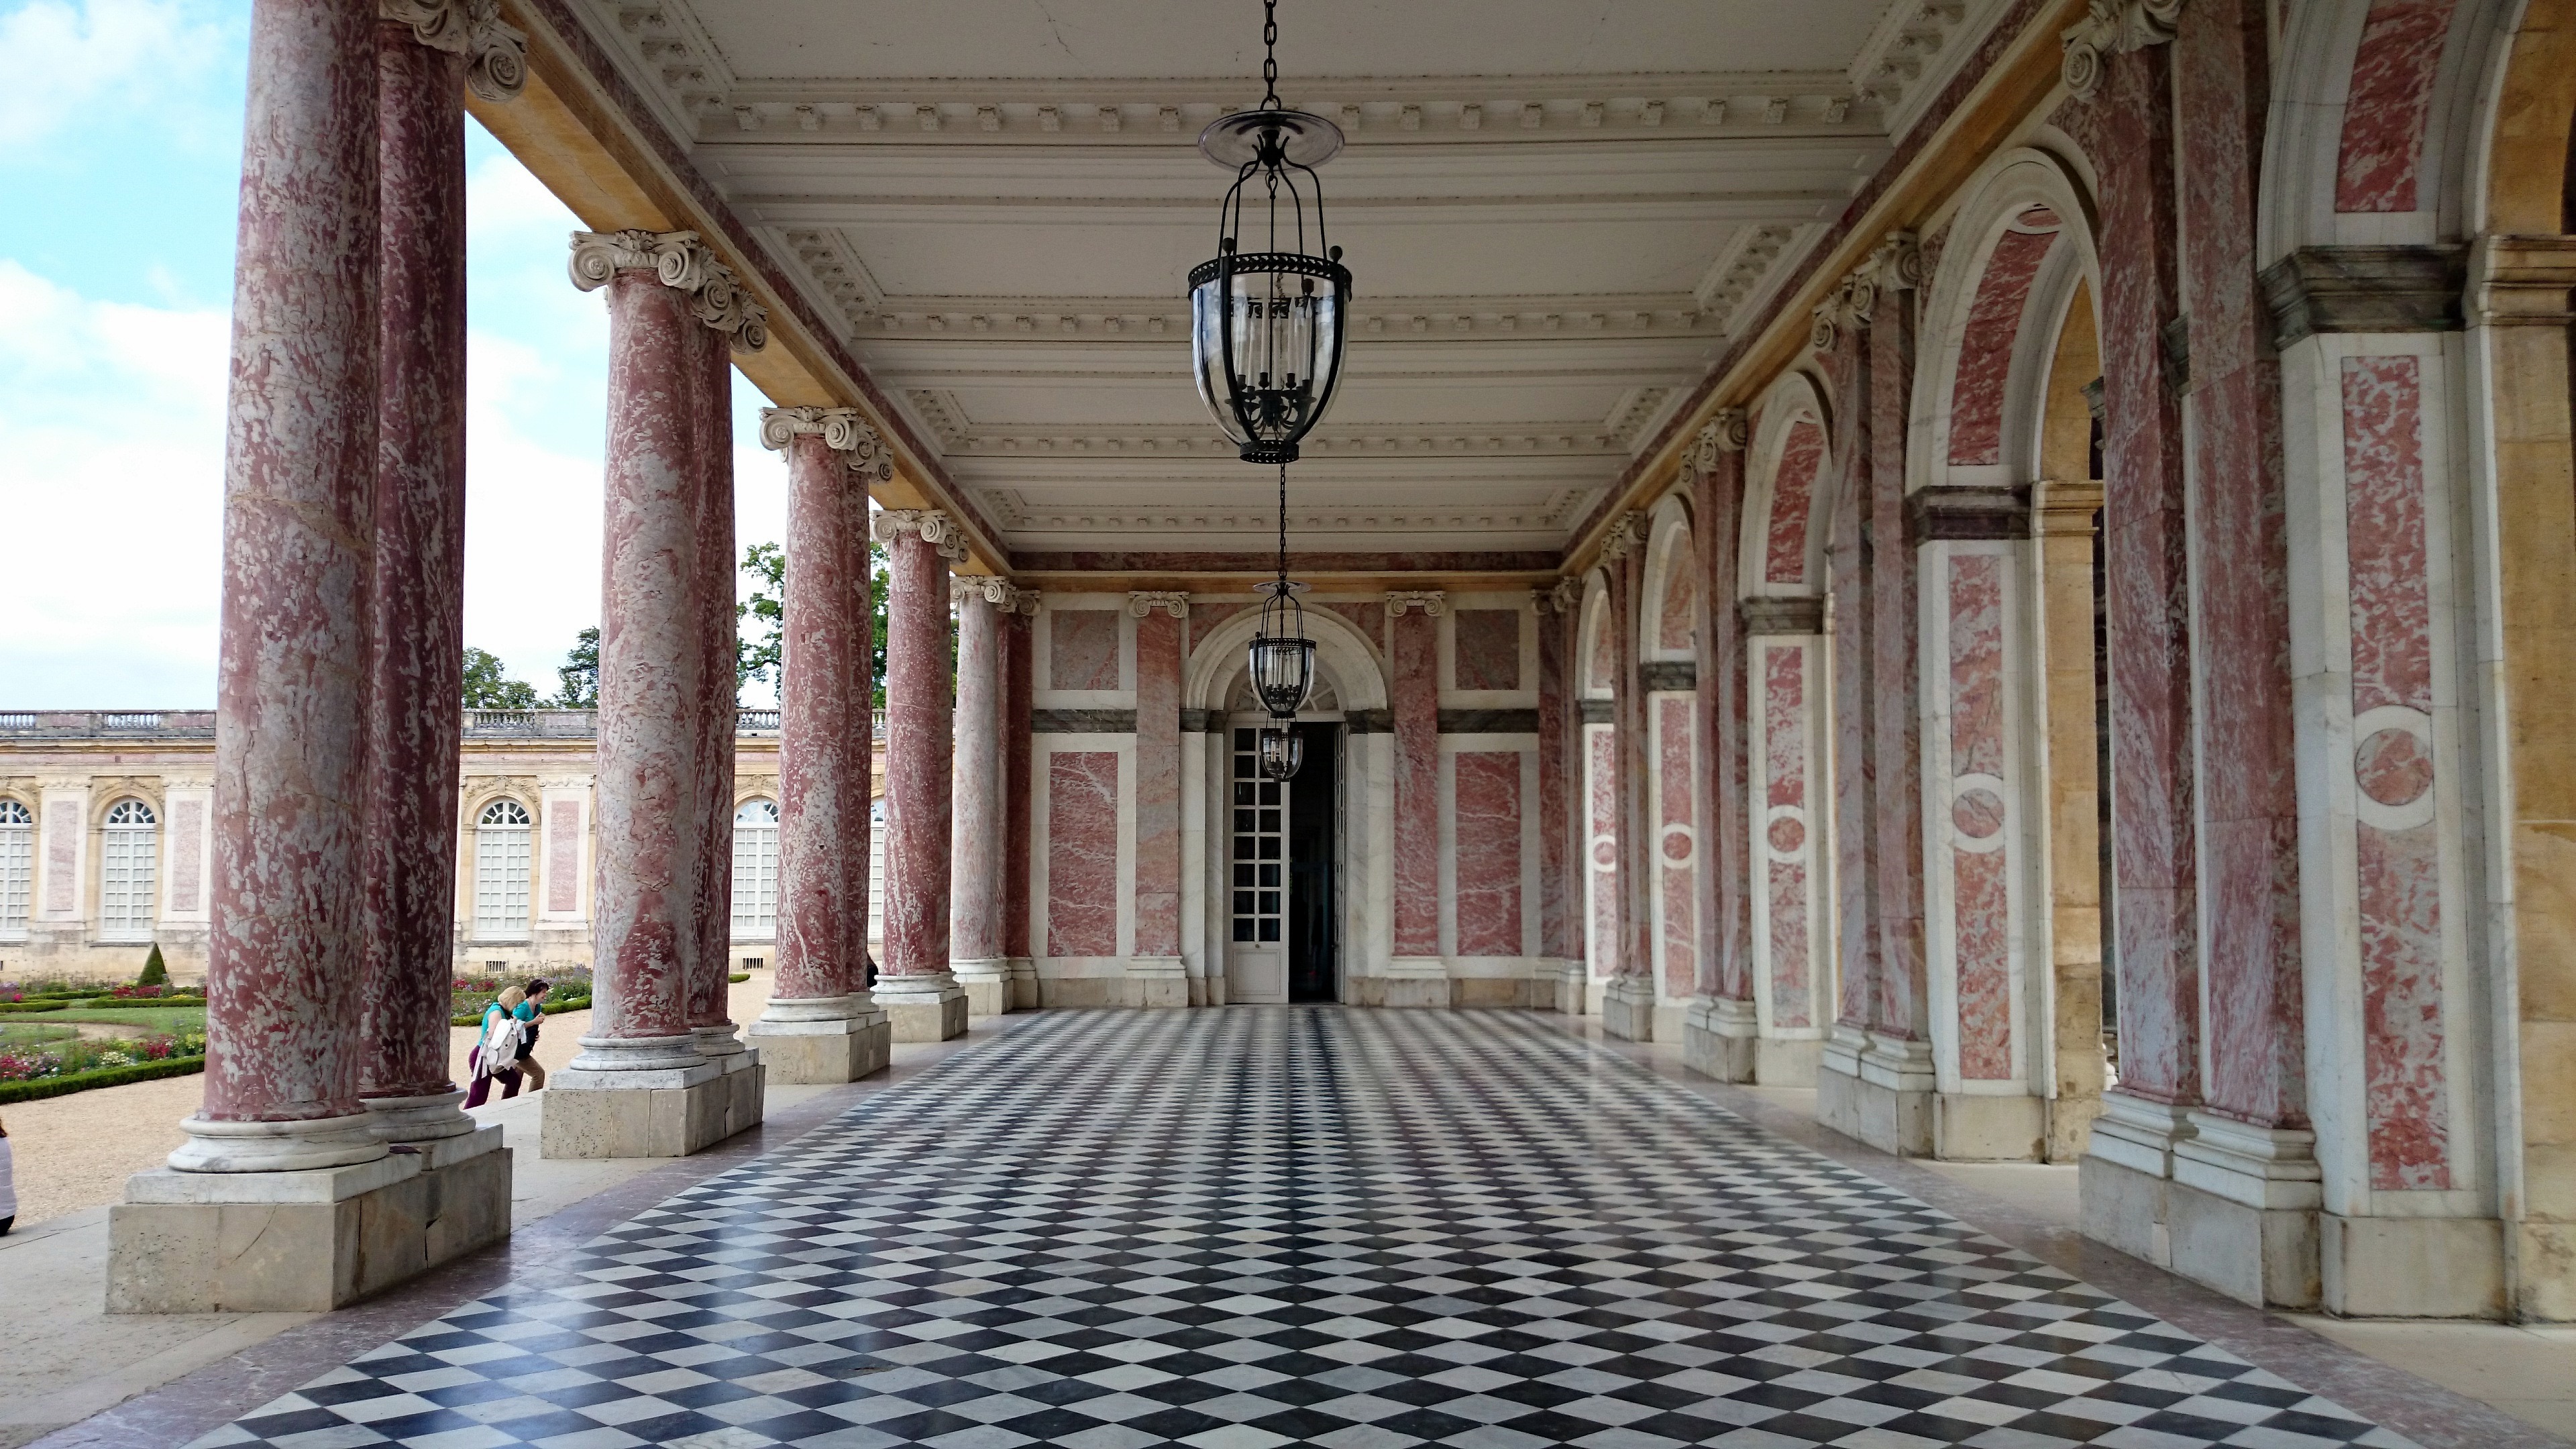 Время версаль. Версальский дворец бальный зал. Дворец и парк в Версале Франция. Версаль и Петергоф.